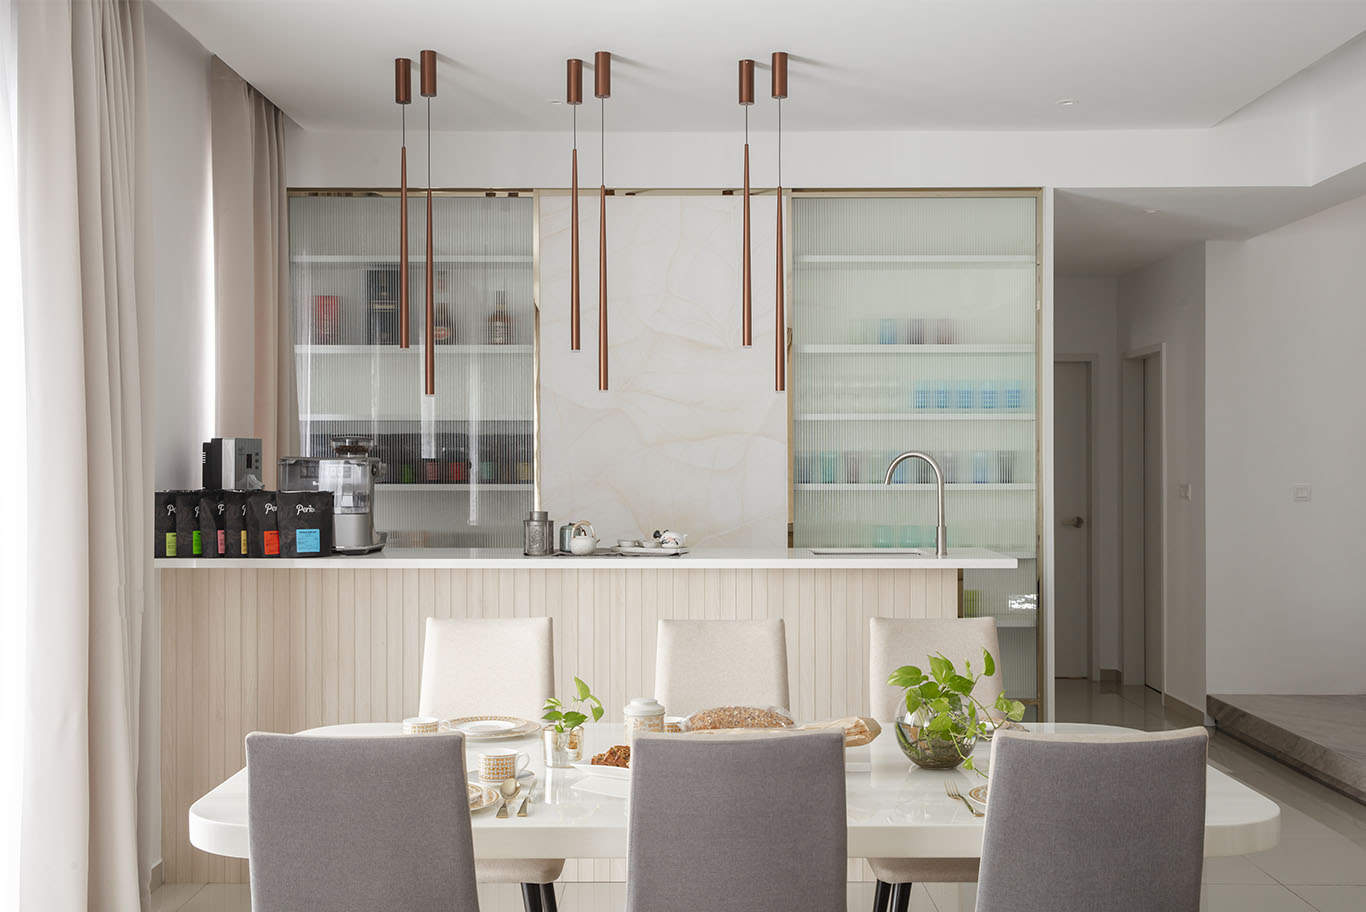 Grande Rhapsody minimalist open kitchen style interior design